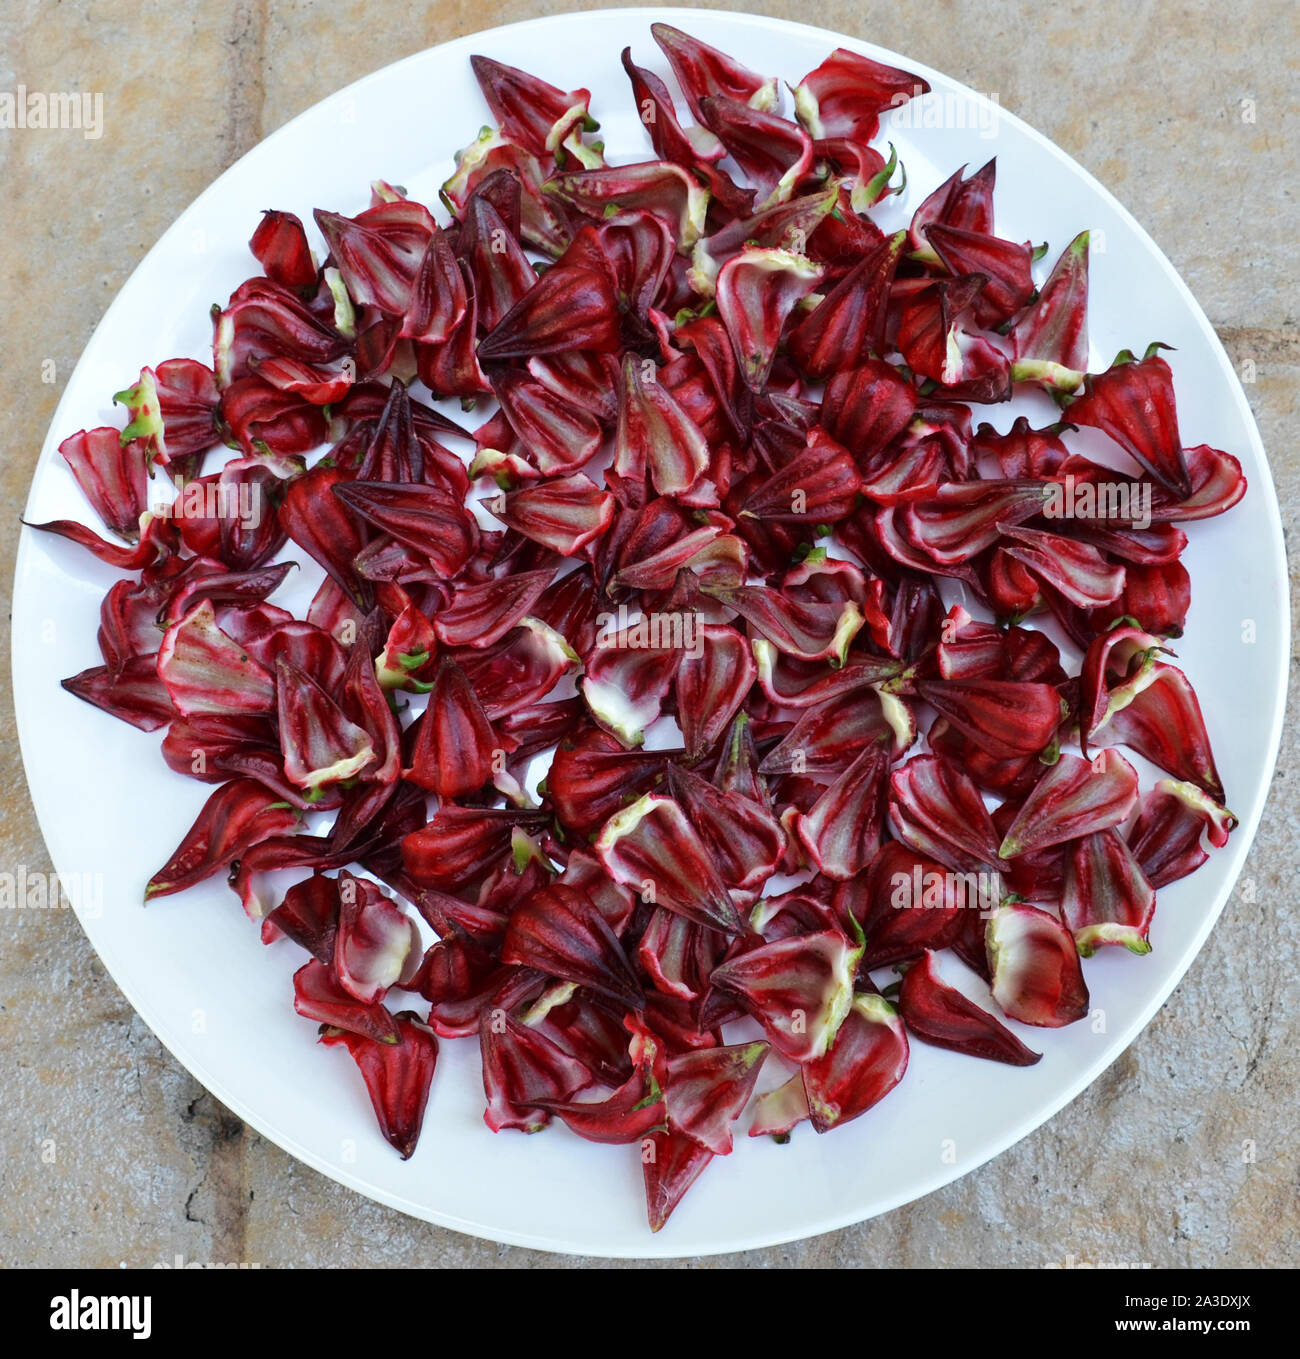 Hibiscus,Red Roselle, noto anche come "Giamaica'. Il colore rosso intenso di limone carnose o sapore di mirtillo palustre i calici possono essere pelati per bevande come tè o mangiato. Foto Stock